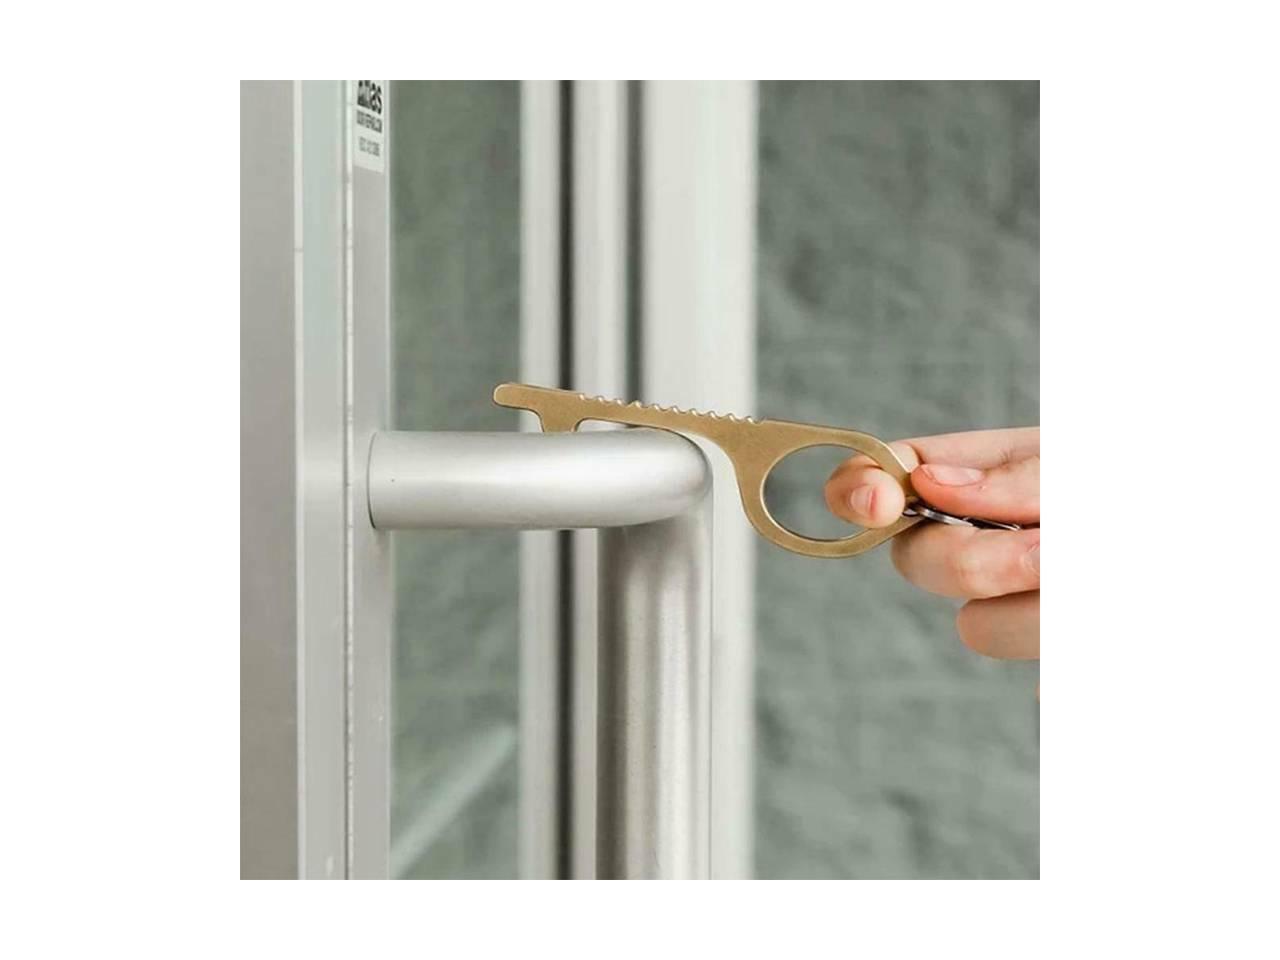 Gold general3 Brass Portable/Zero Contact Multifunction Avoid Contact Elevator Door Handles Public Portable Door Safety Hygienic Door Handle EDC Door Opener Easy To Carry